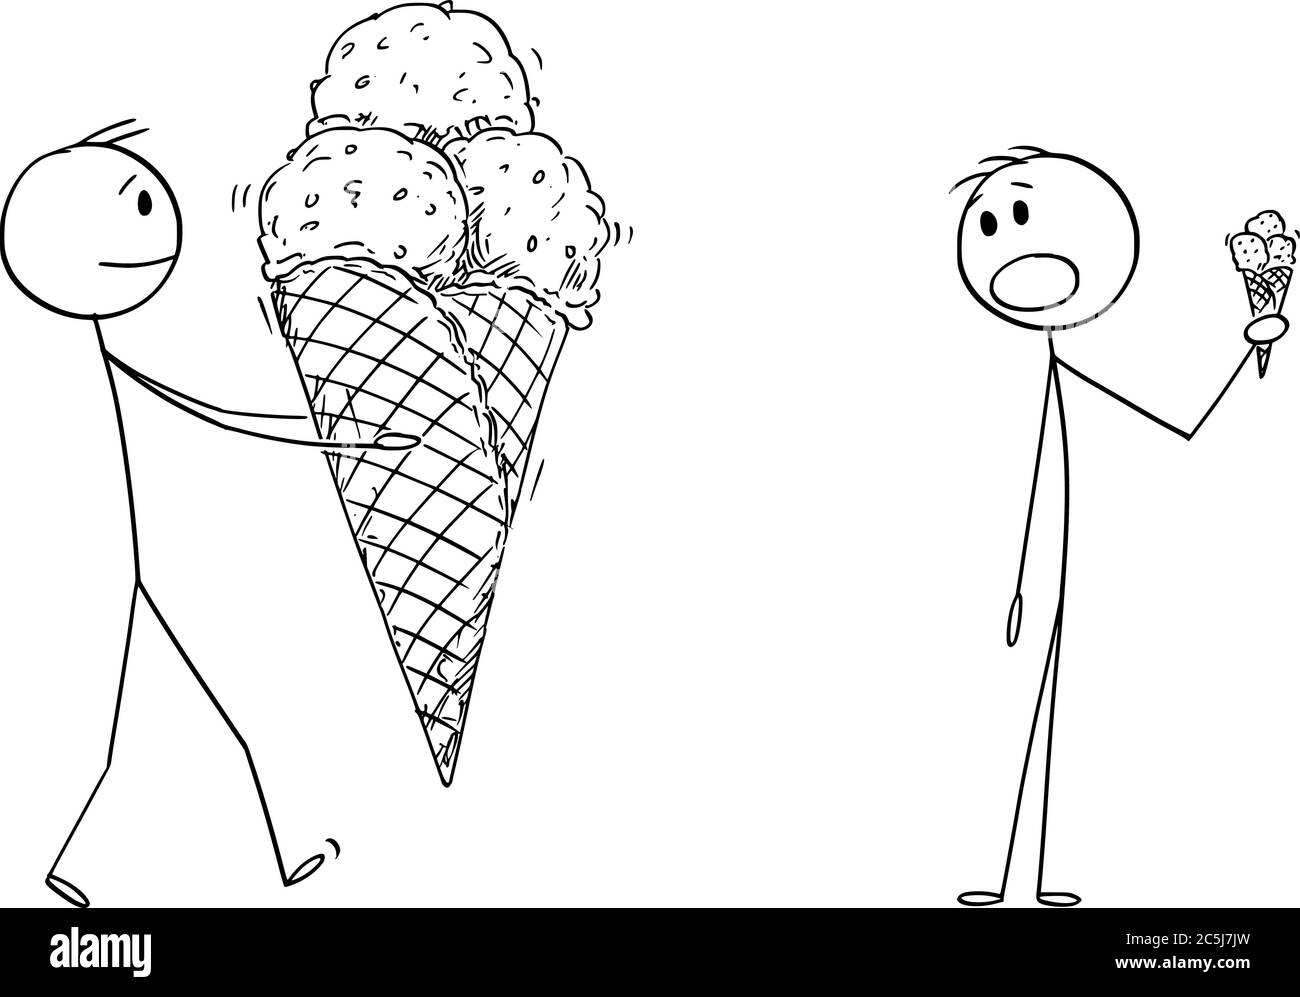 Disegno grafico vettoriale del cartoon illustrazione concettuale dell'uomo che tiene il gelato grande nel cono del waffle. Dessert estivo freddo. L'uomo con il piccolo cono è sconvolto. Illustrazione Vettoriale